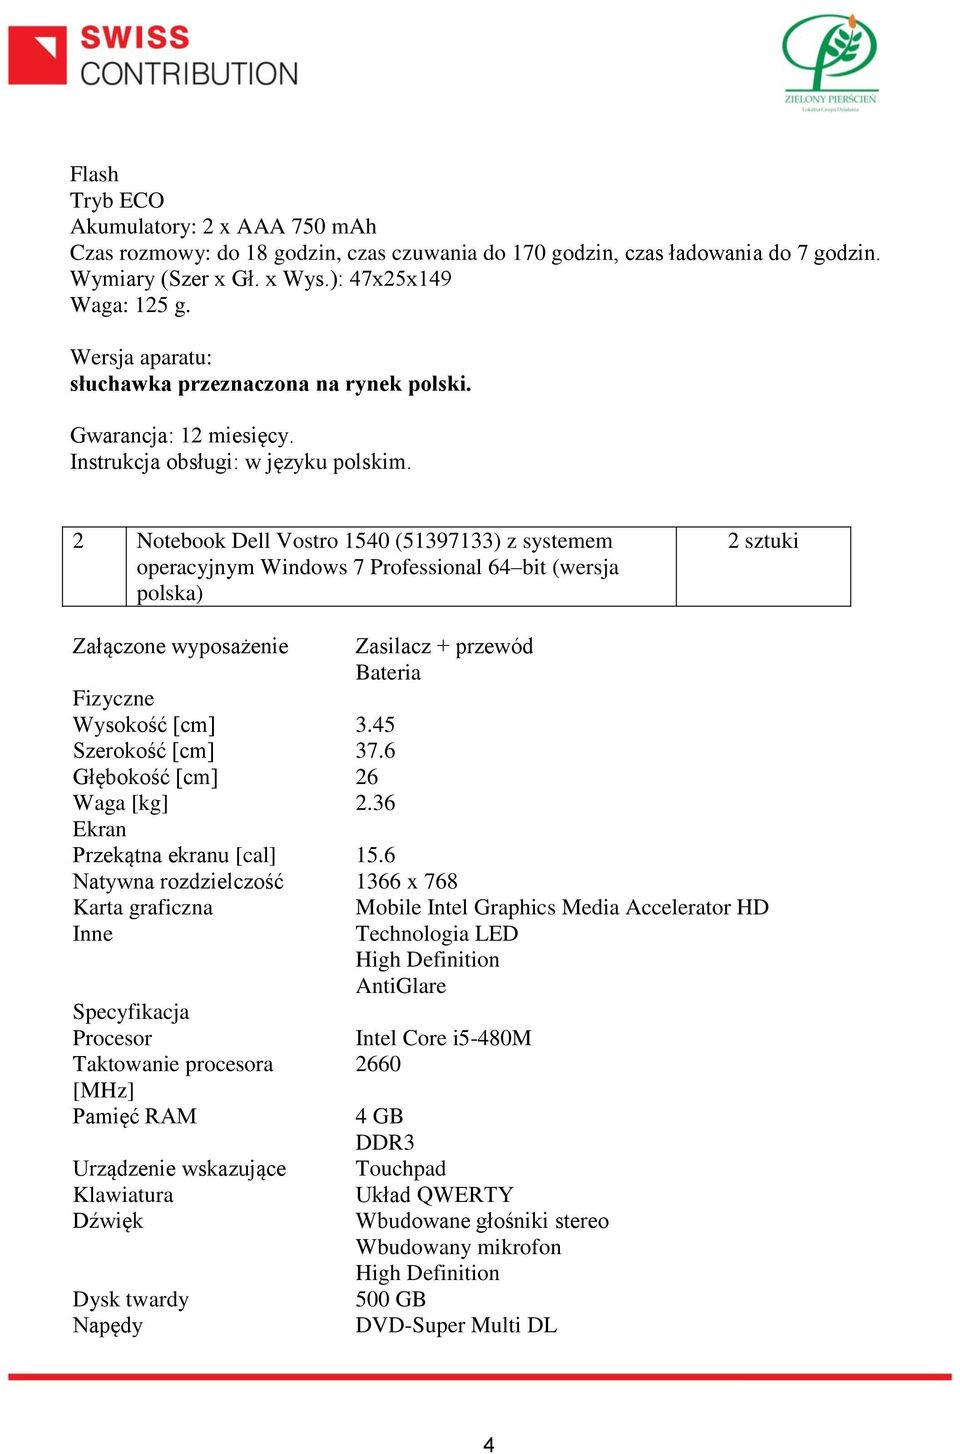 2 Notebook Dell Vostro 1540 (51397133) z systemem operacyjnym Windows 7 Professional 64 bit (wersja polska) 2 sztuki Załączone wyposażenie Zasilacz + przewód Bateria Fizyczne Wysokość [cm] 3.